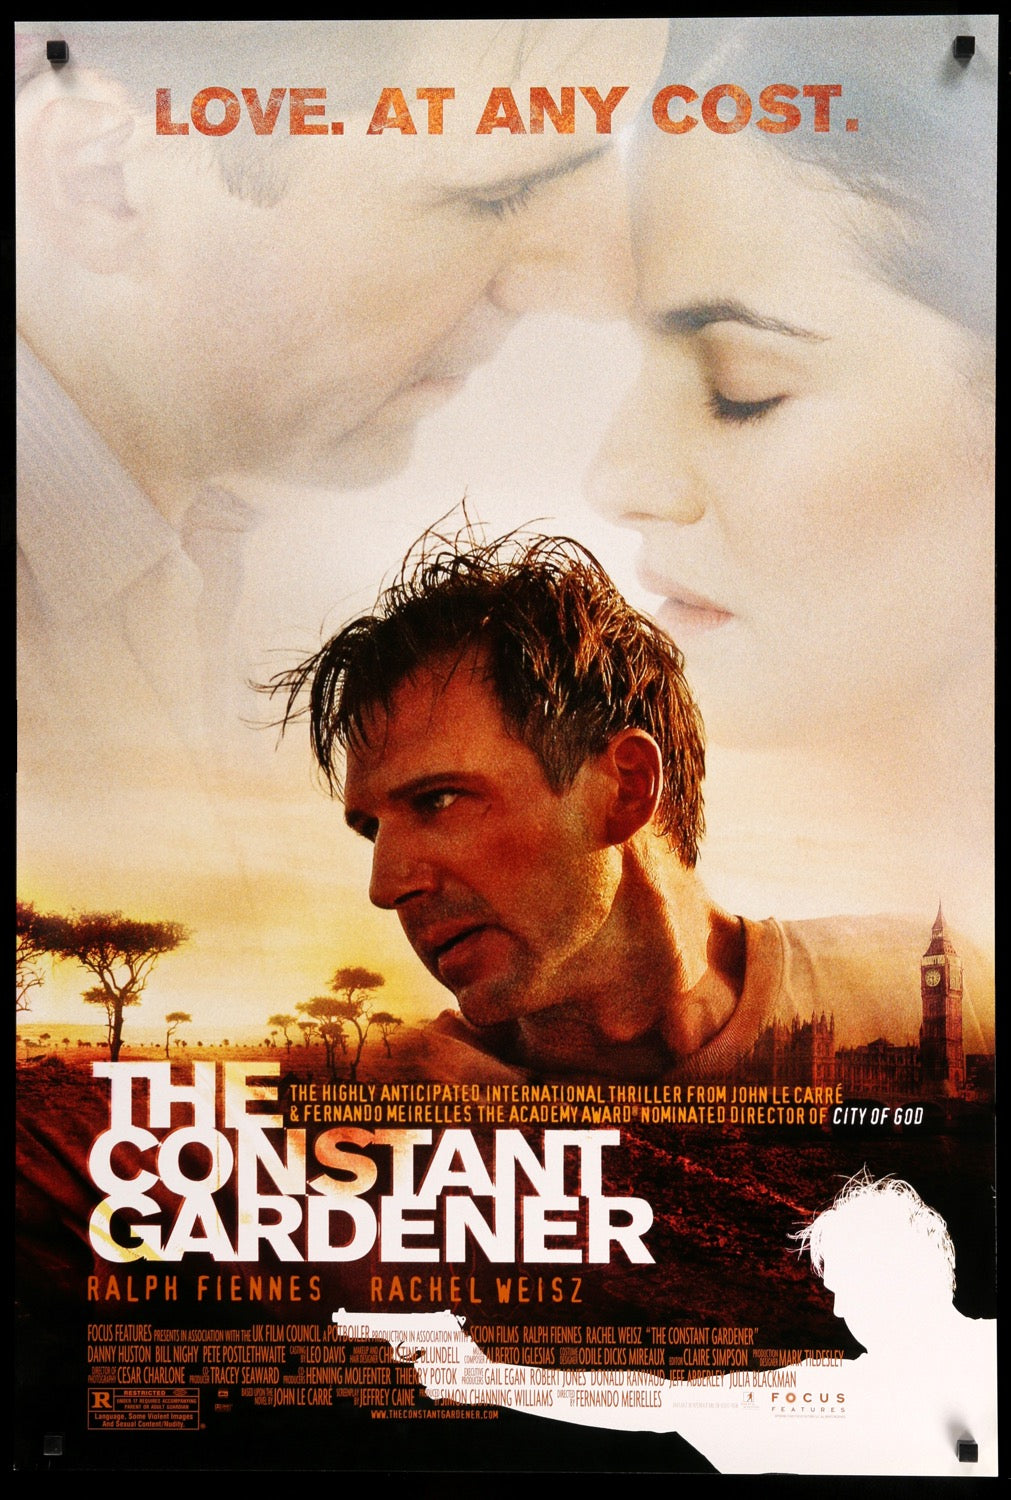 Constant Gardener (2005) original movie poster for sale at Original Film Art